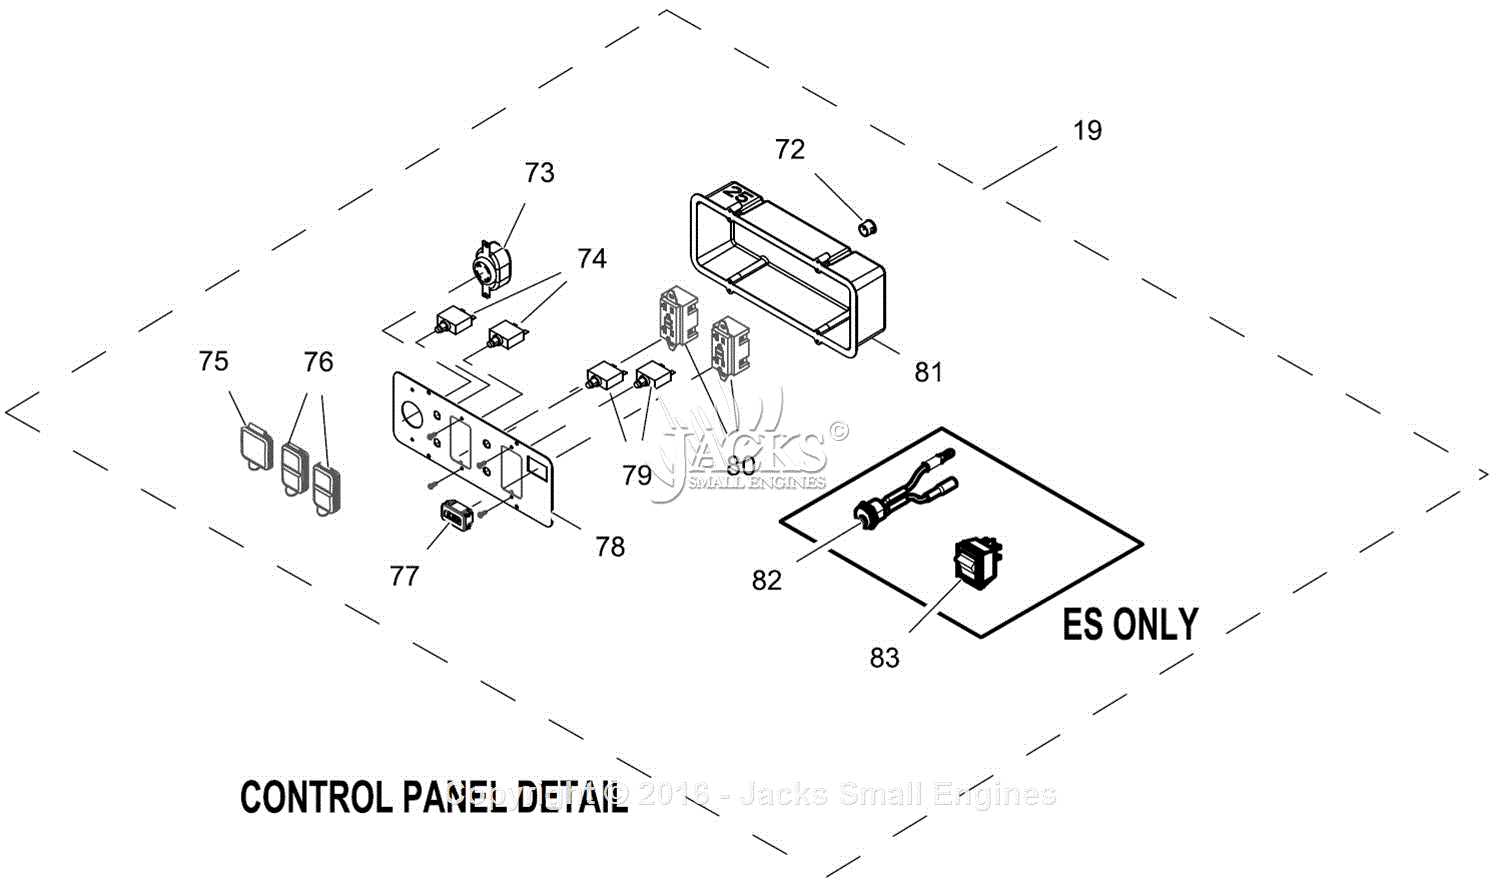 generac gp7500e parts diagram